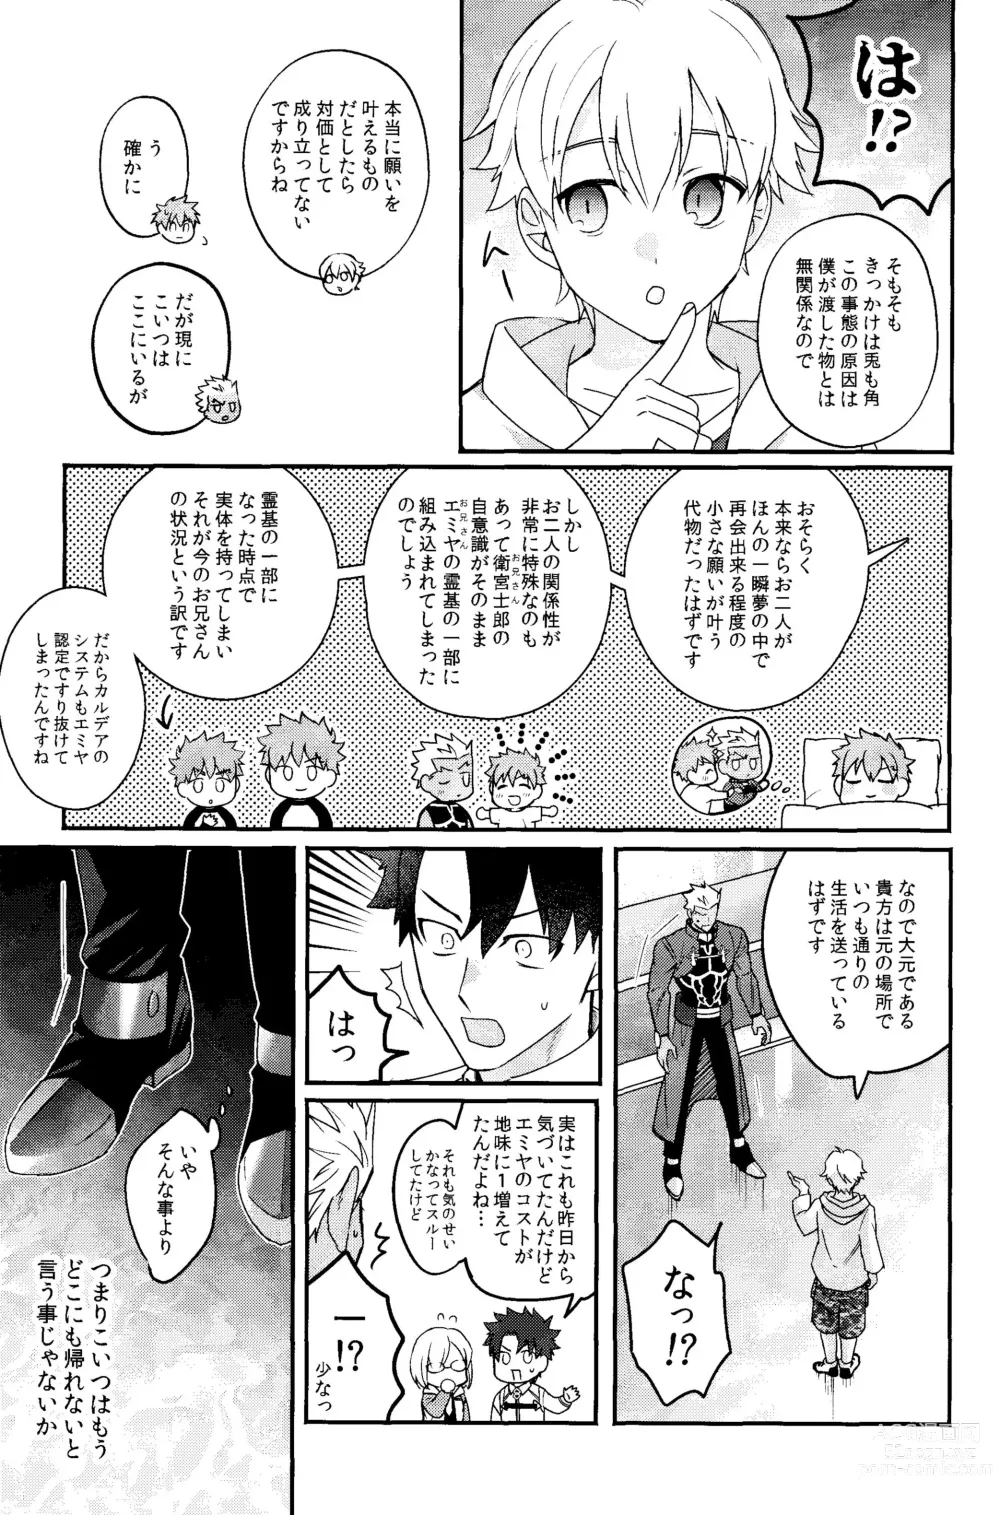 Page 24 of doujinshi Iru